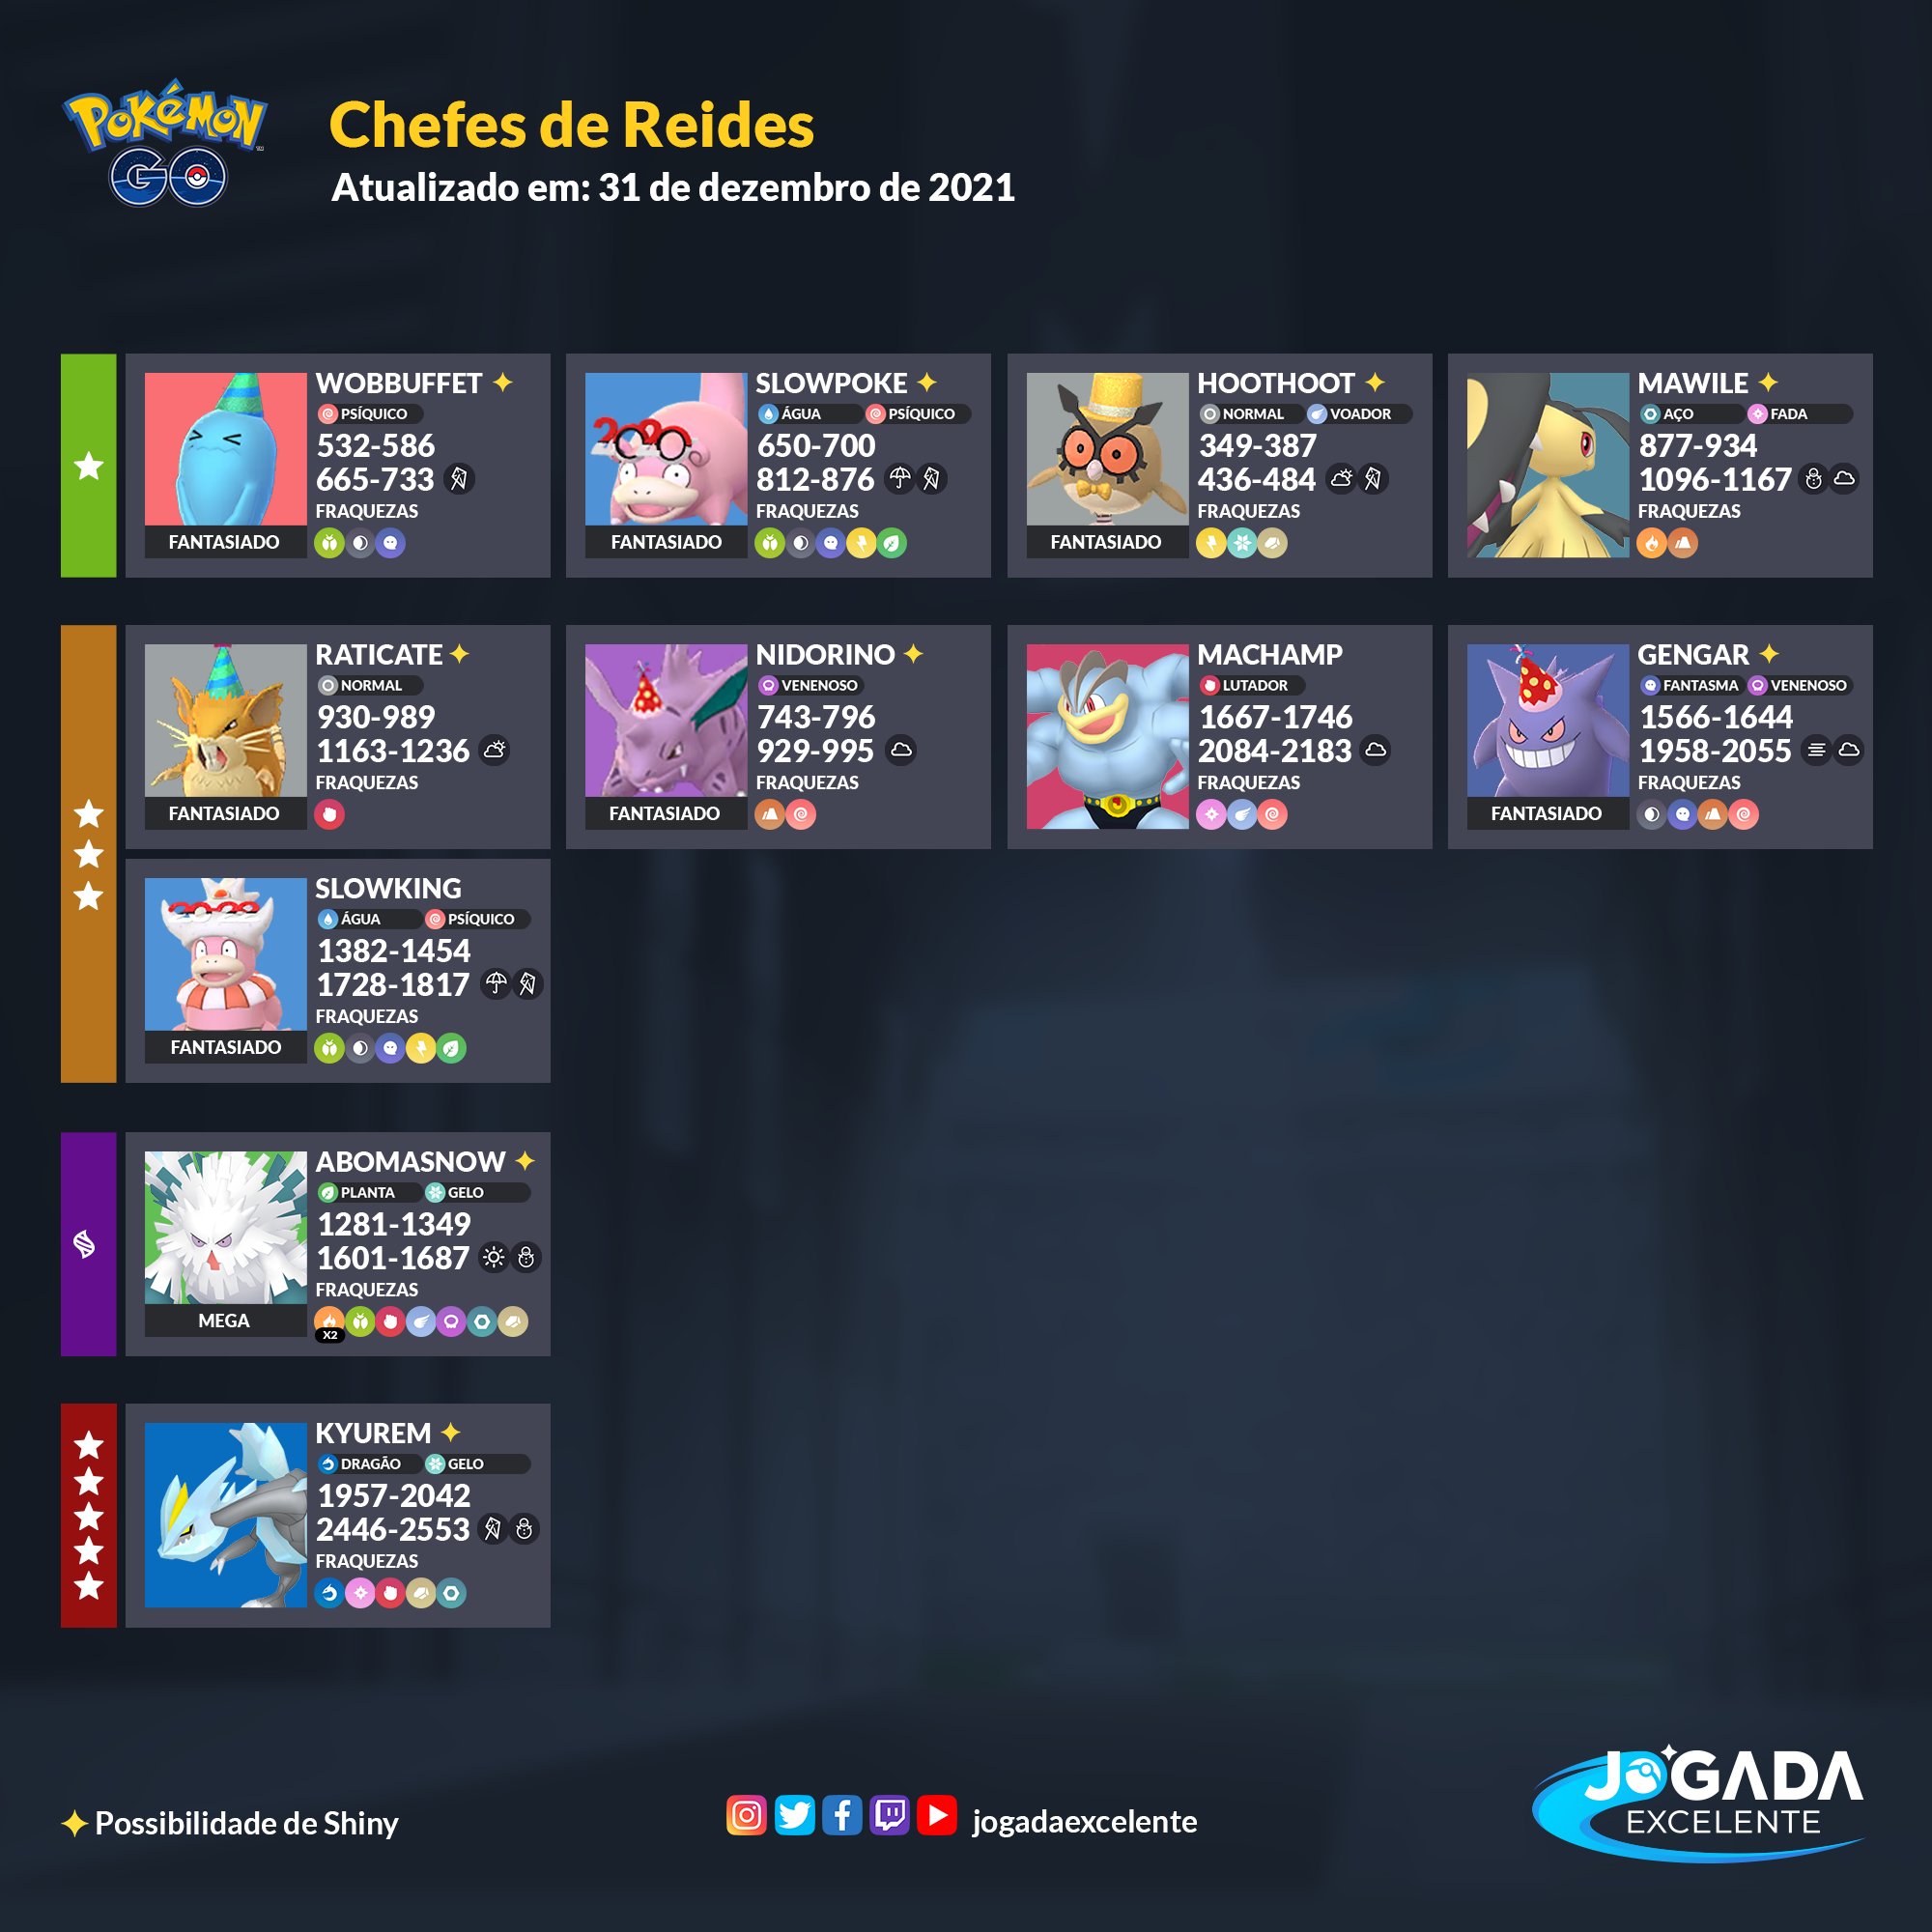 Jogada Excelente - Tornadus Therian fará sua estreia no Pokémon GO como  Chefe de Reides 5 Estrelas. Confira quais são os counters recomendados e se  prepare! ⠀ Data: 30/03 às 10h a